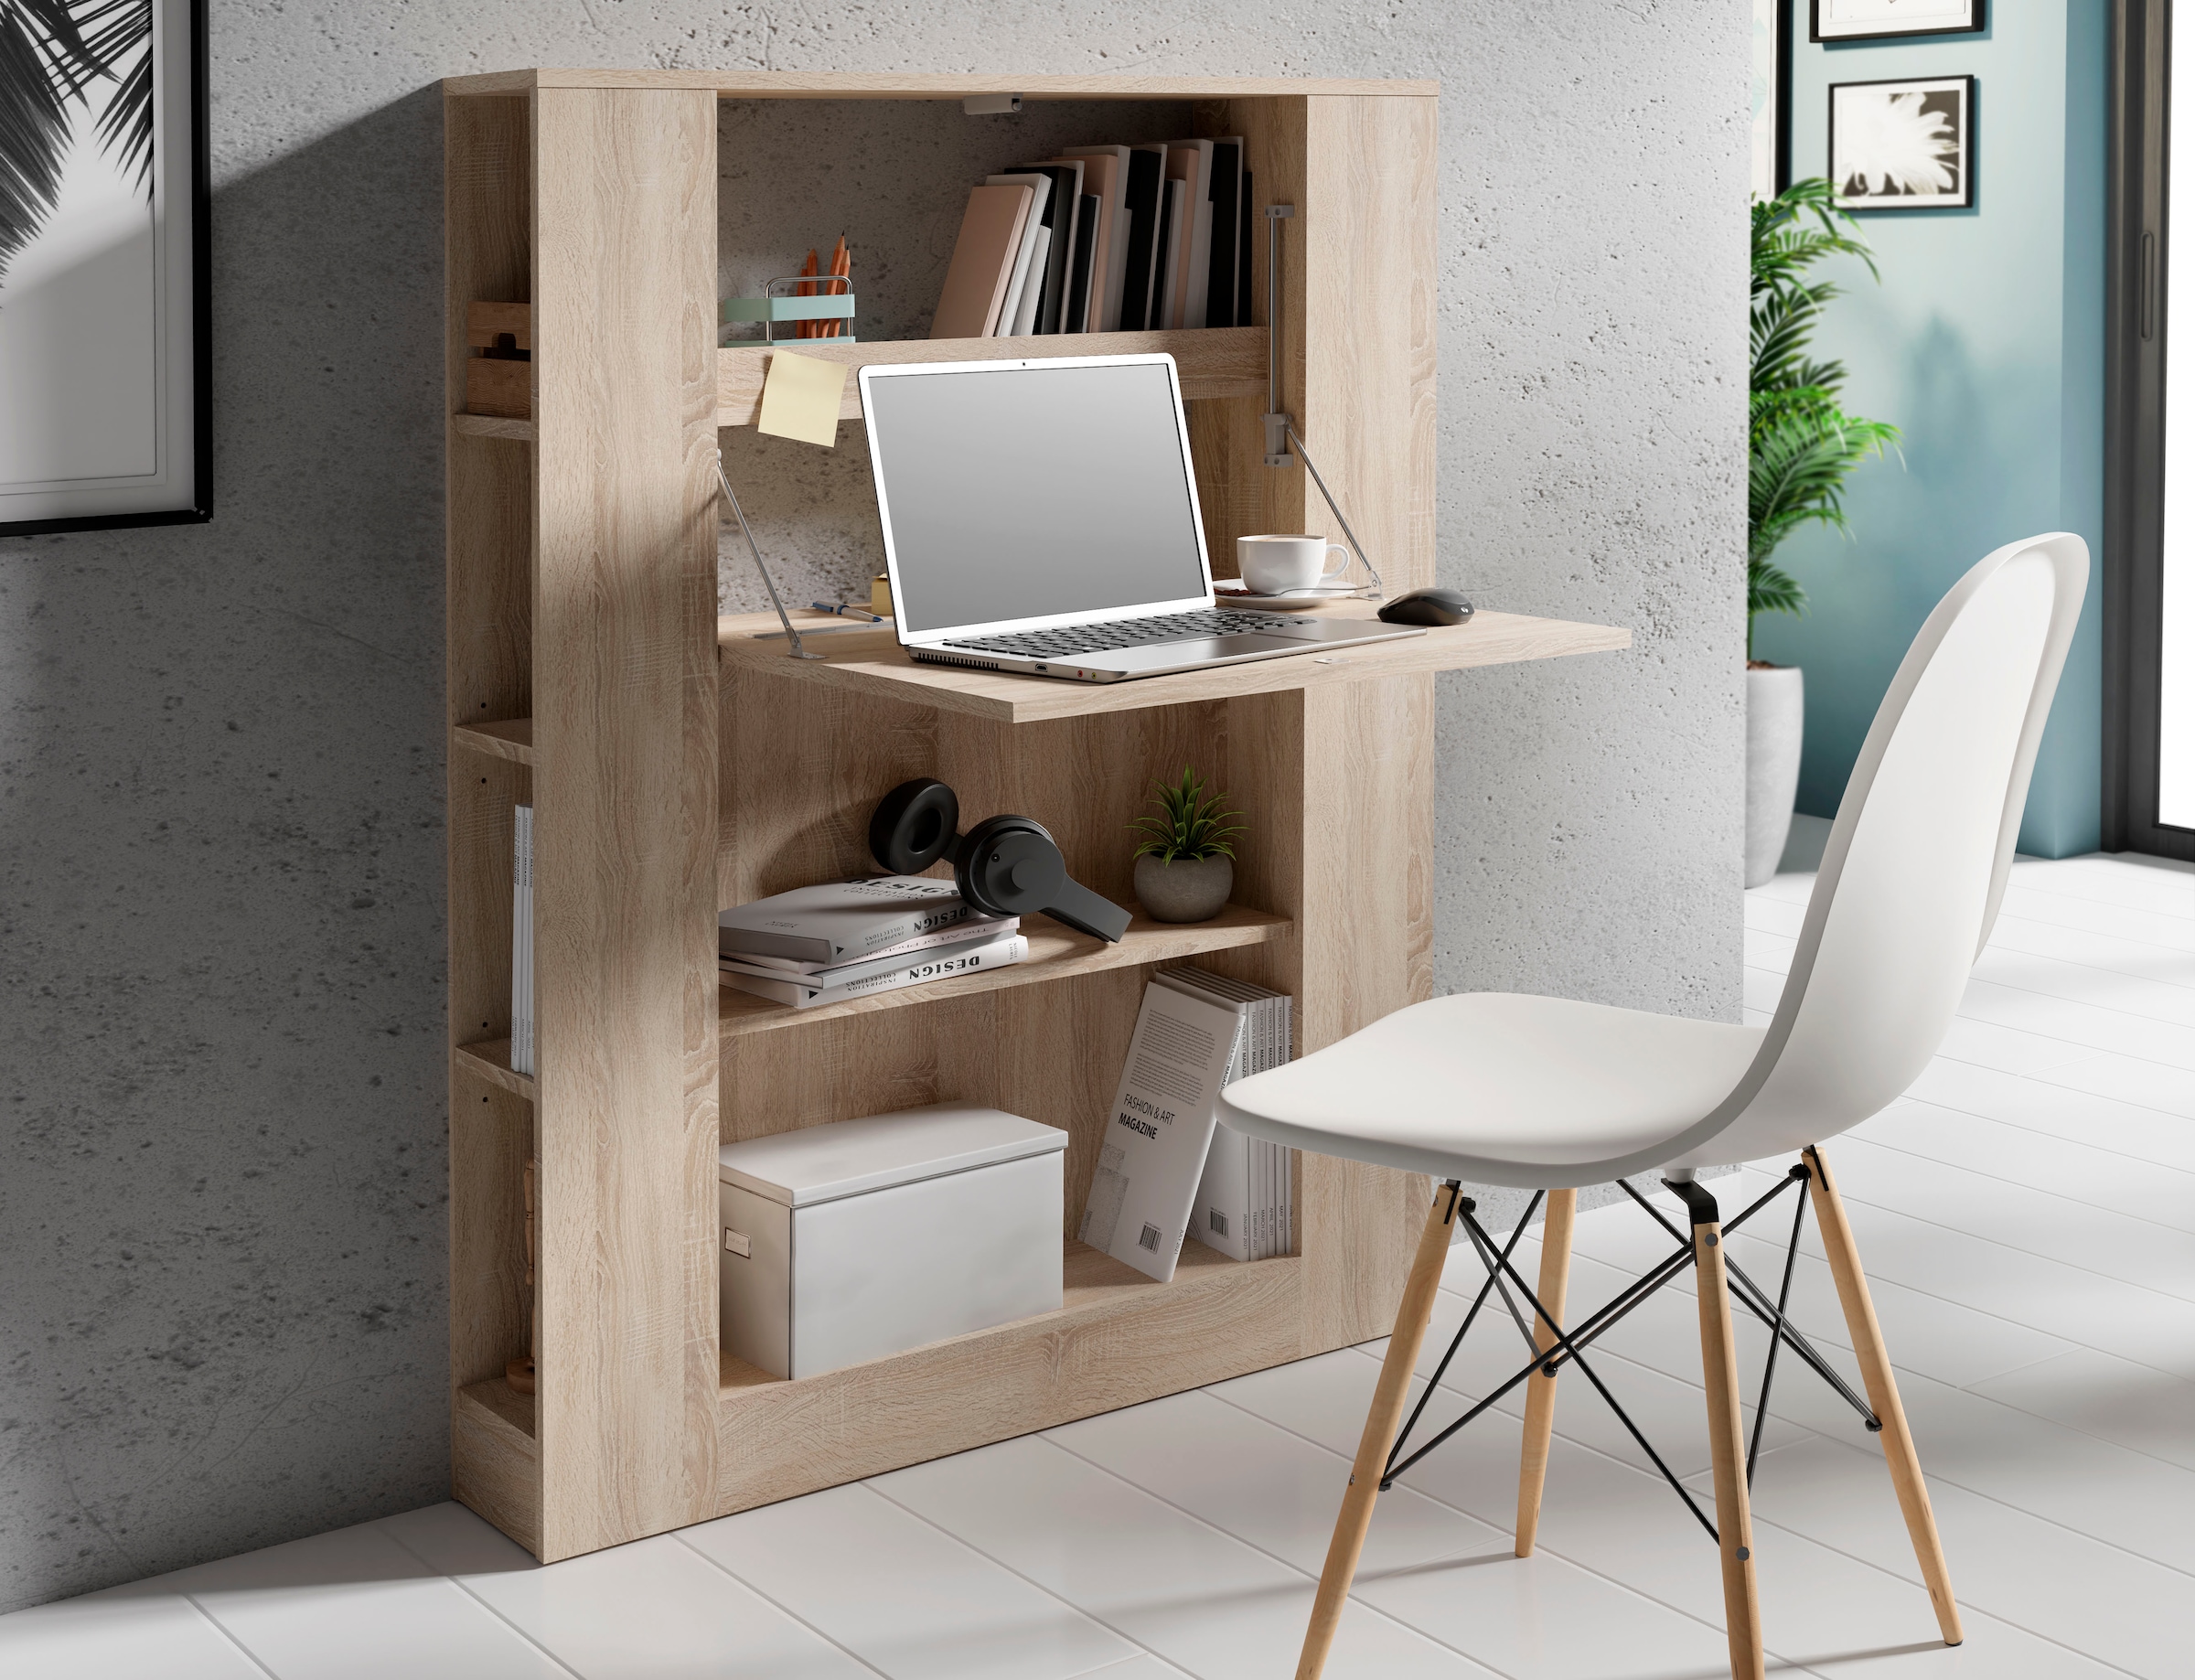 FORTE Regal-Schreibtisch »Multifunktional«, ideal für das Home Office, Breite 88,2 cm